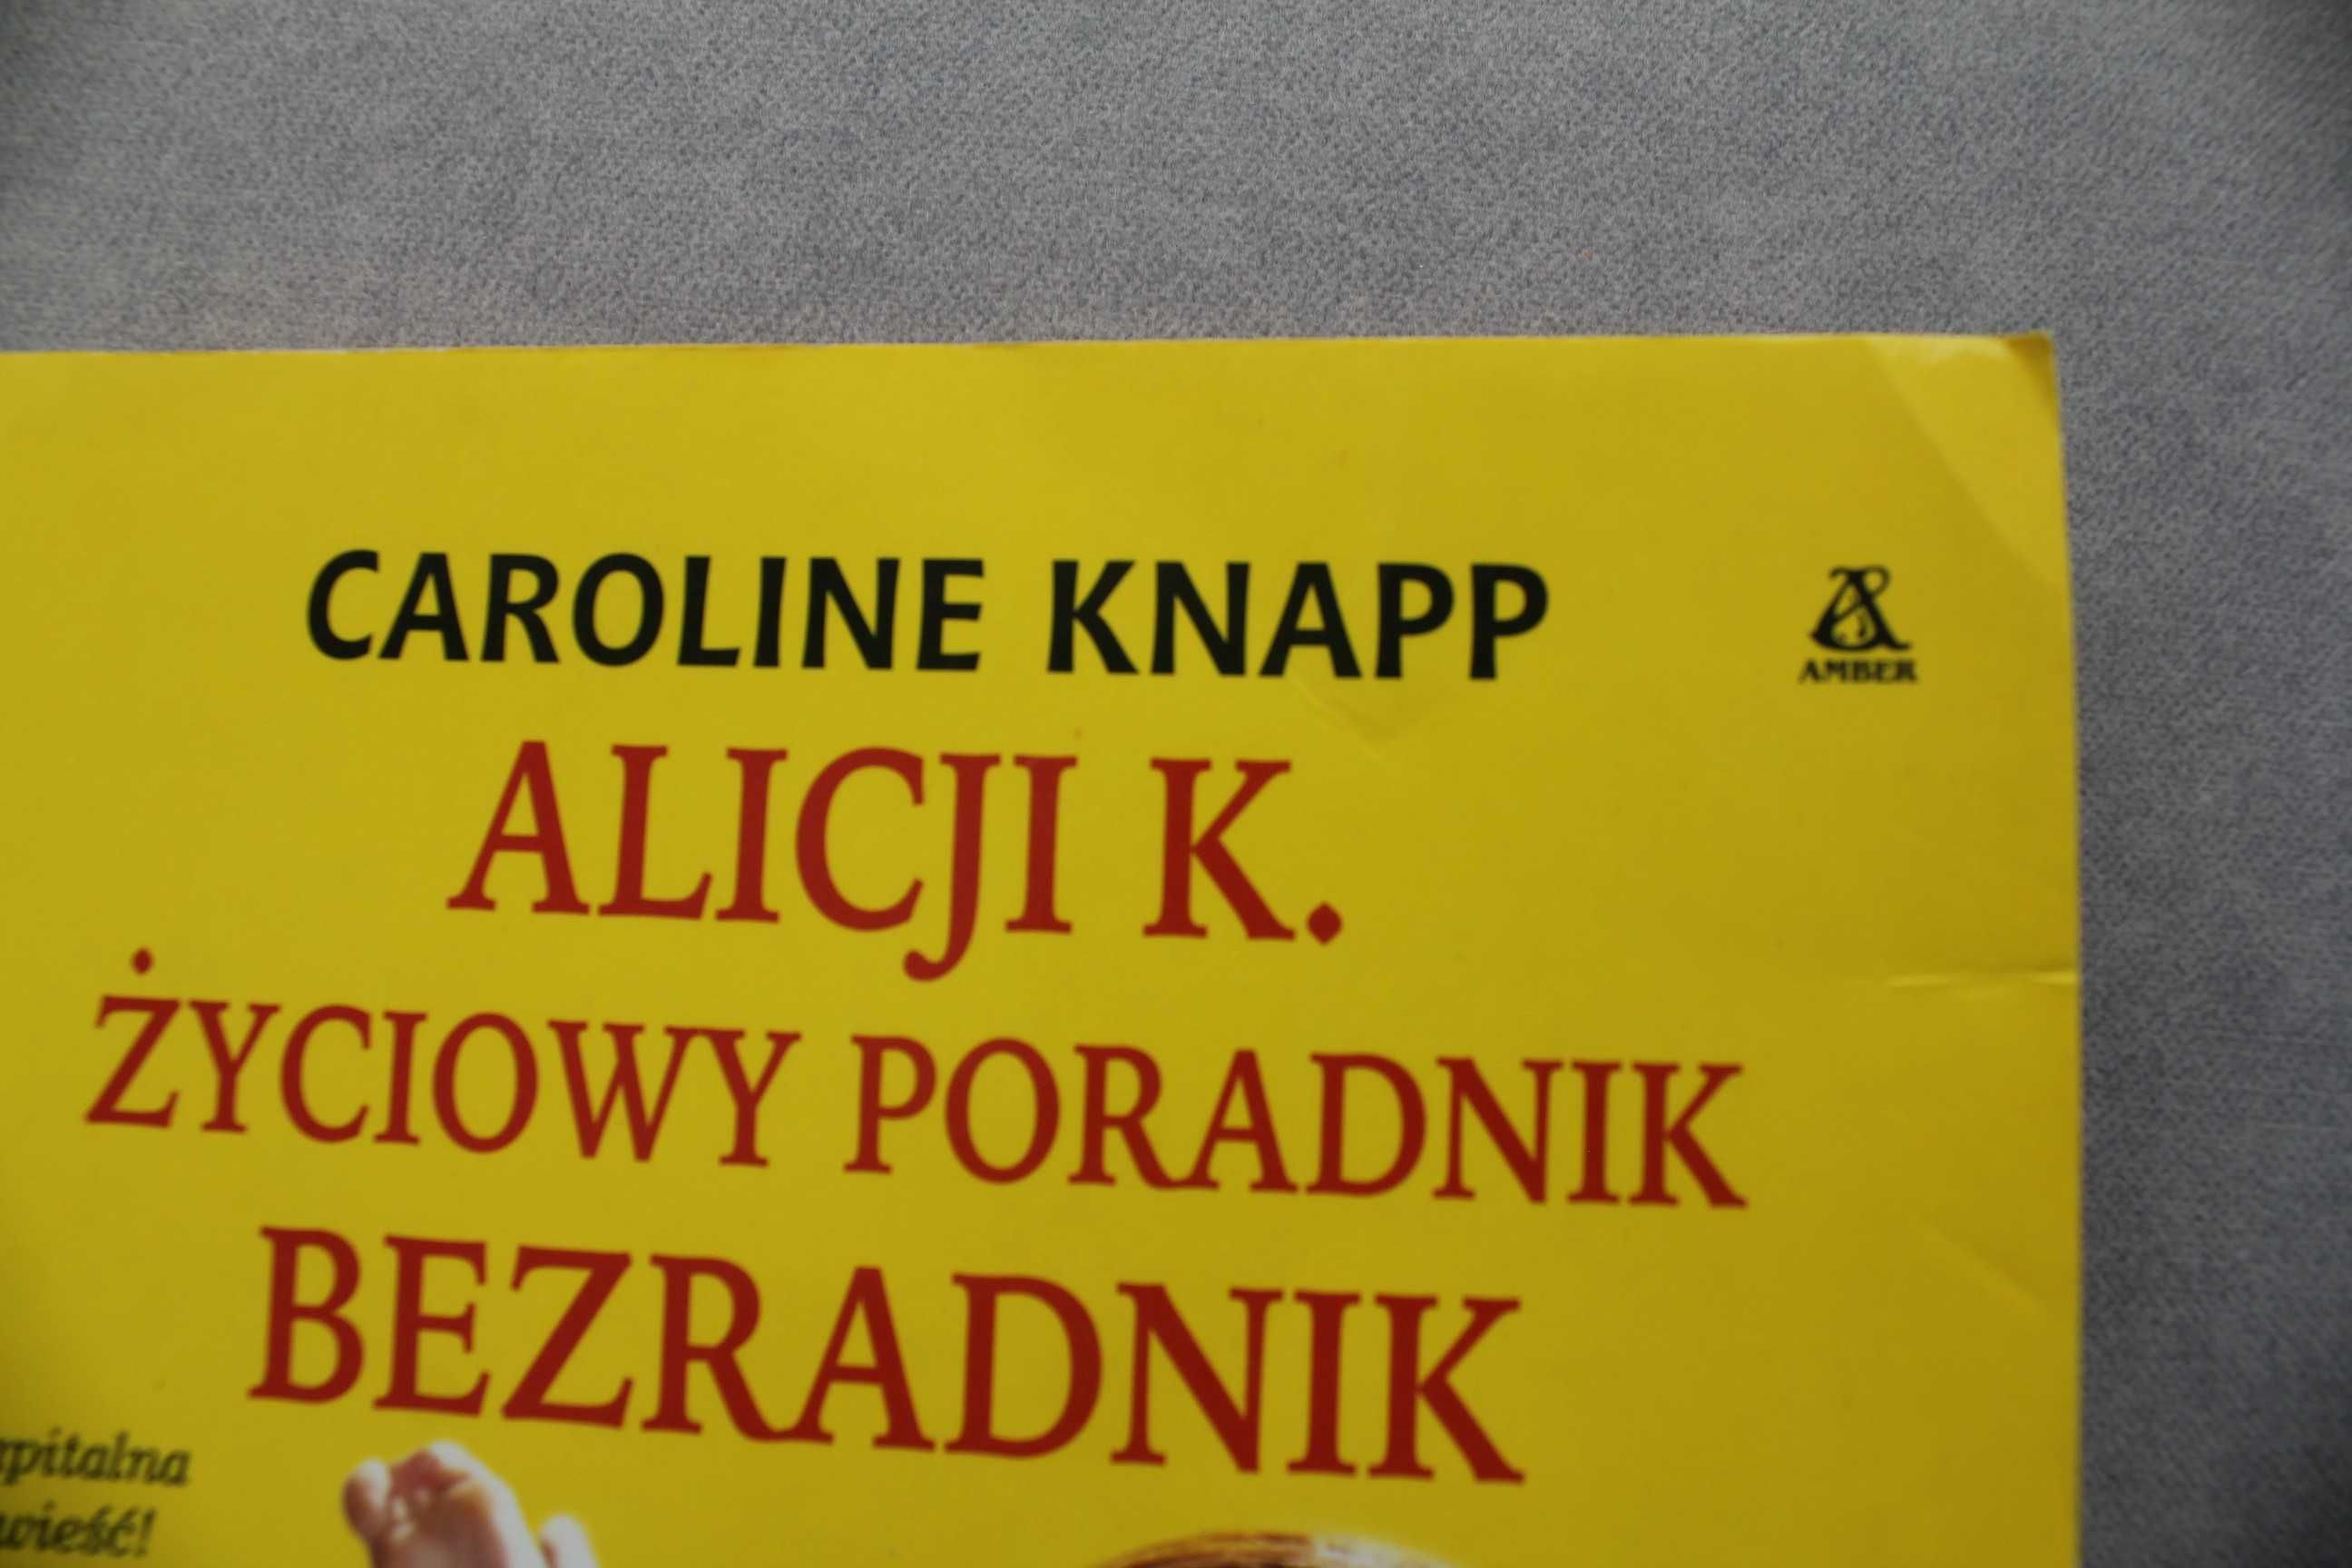 Alicji K. Życiowy poradnik bezradnik Caroline Knapp Wyd. Amber 2001